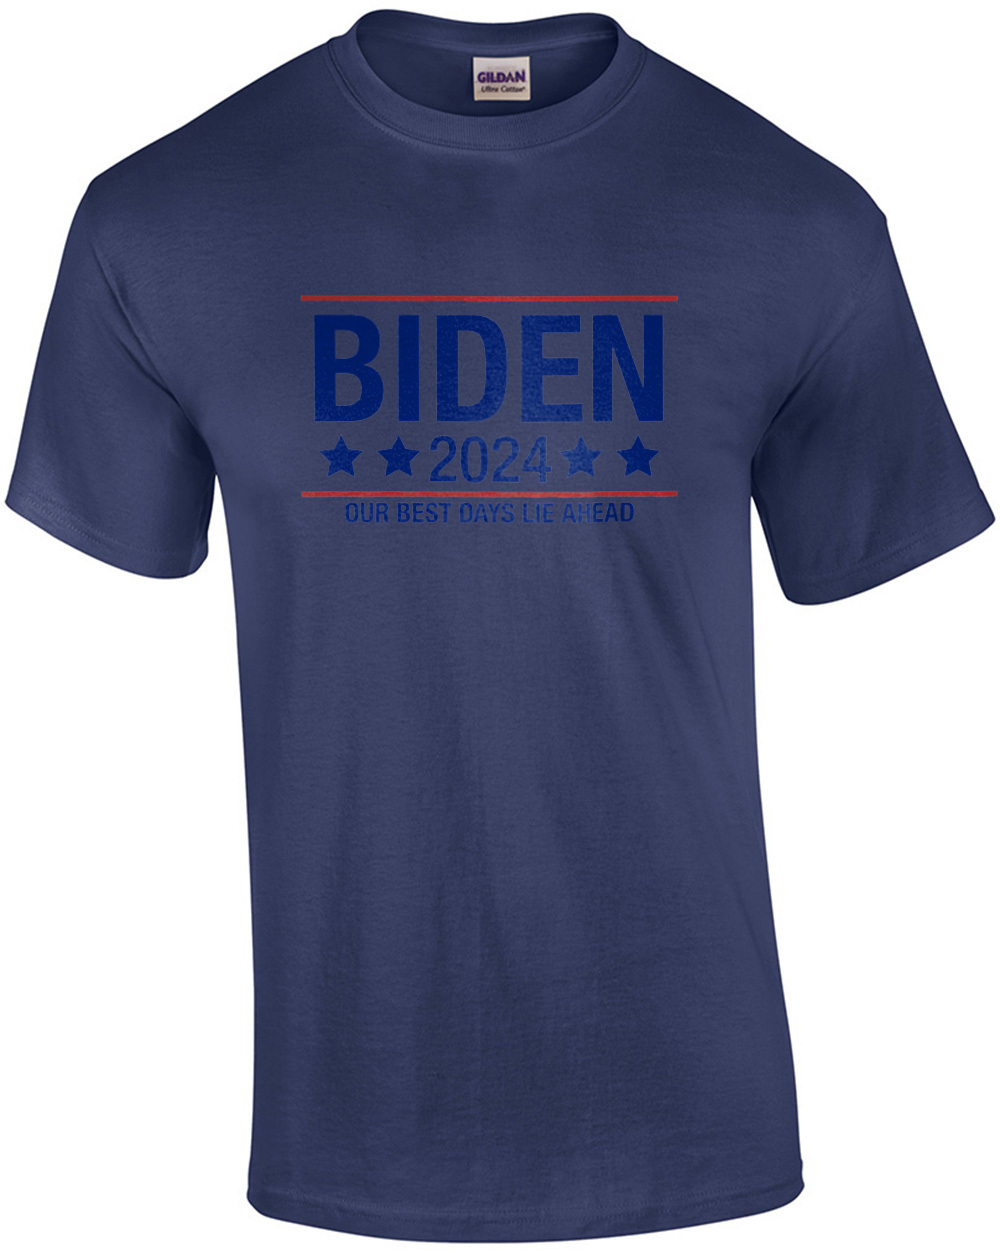 Biden 2024 Our Best Days Lie Ahead Shirt | eBay